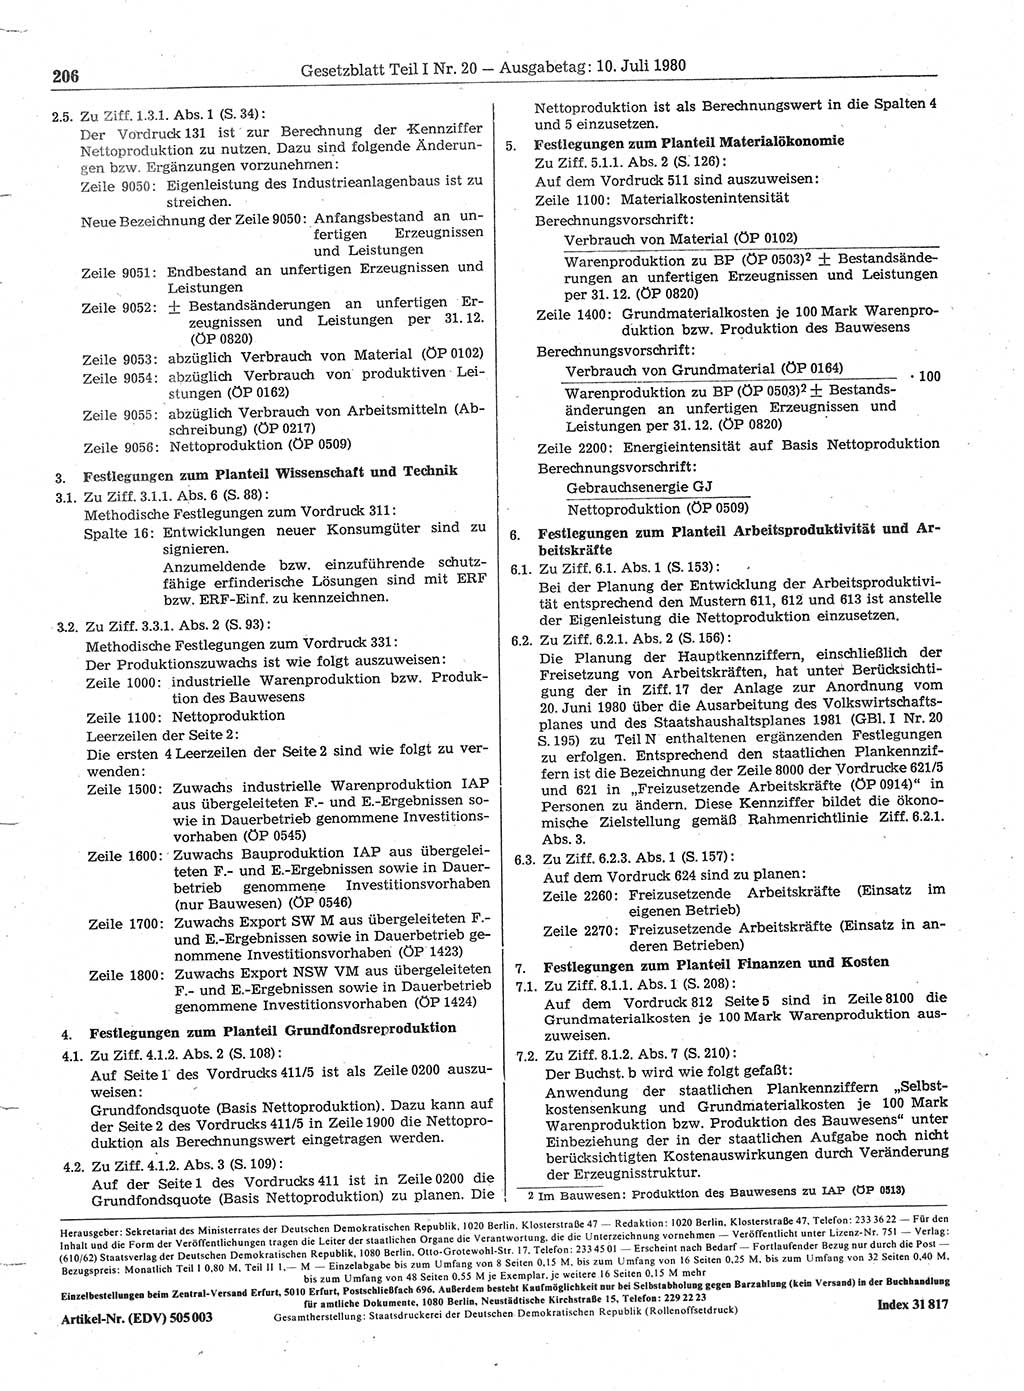 Gesetzblatt (GBl.) der Deutschen Demokratischen Republik (DDR) Teil Ⅰ 1980, Seite 206 (GBl. DDR Ⅰ 1980, S. 206)